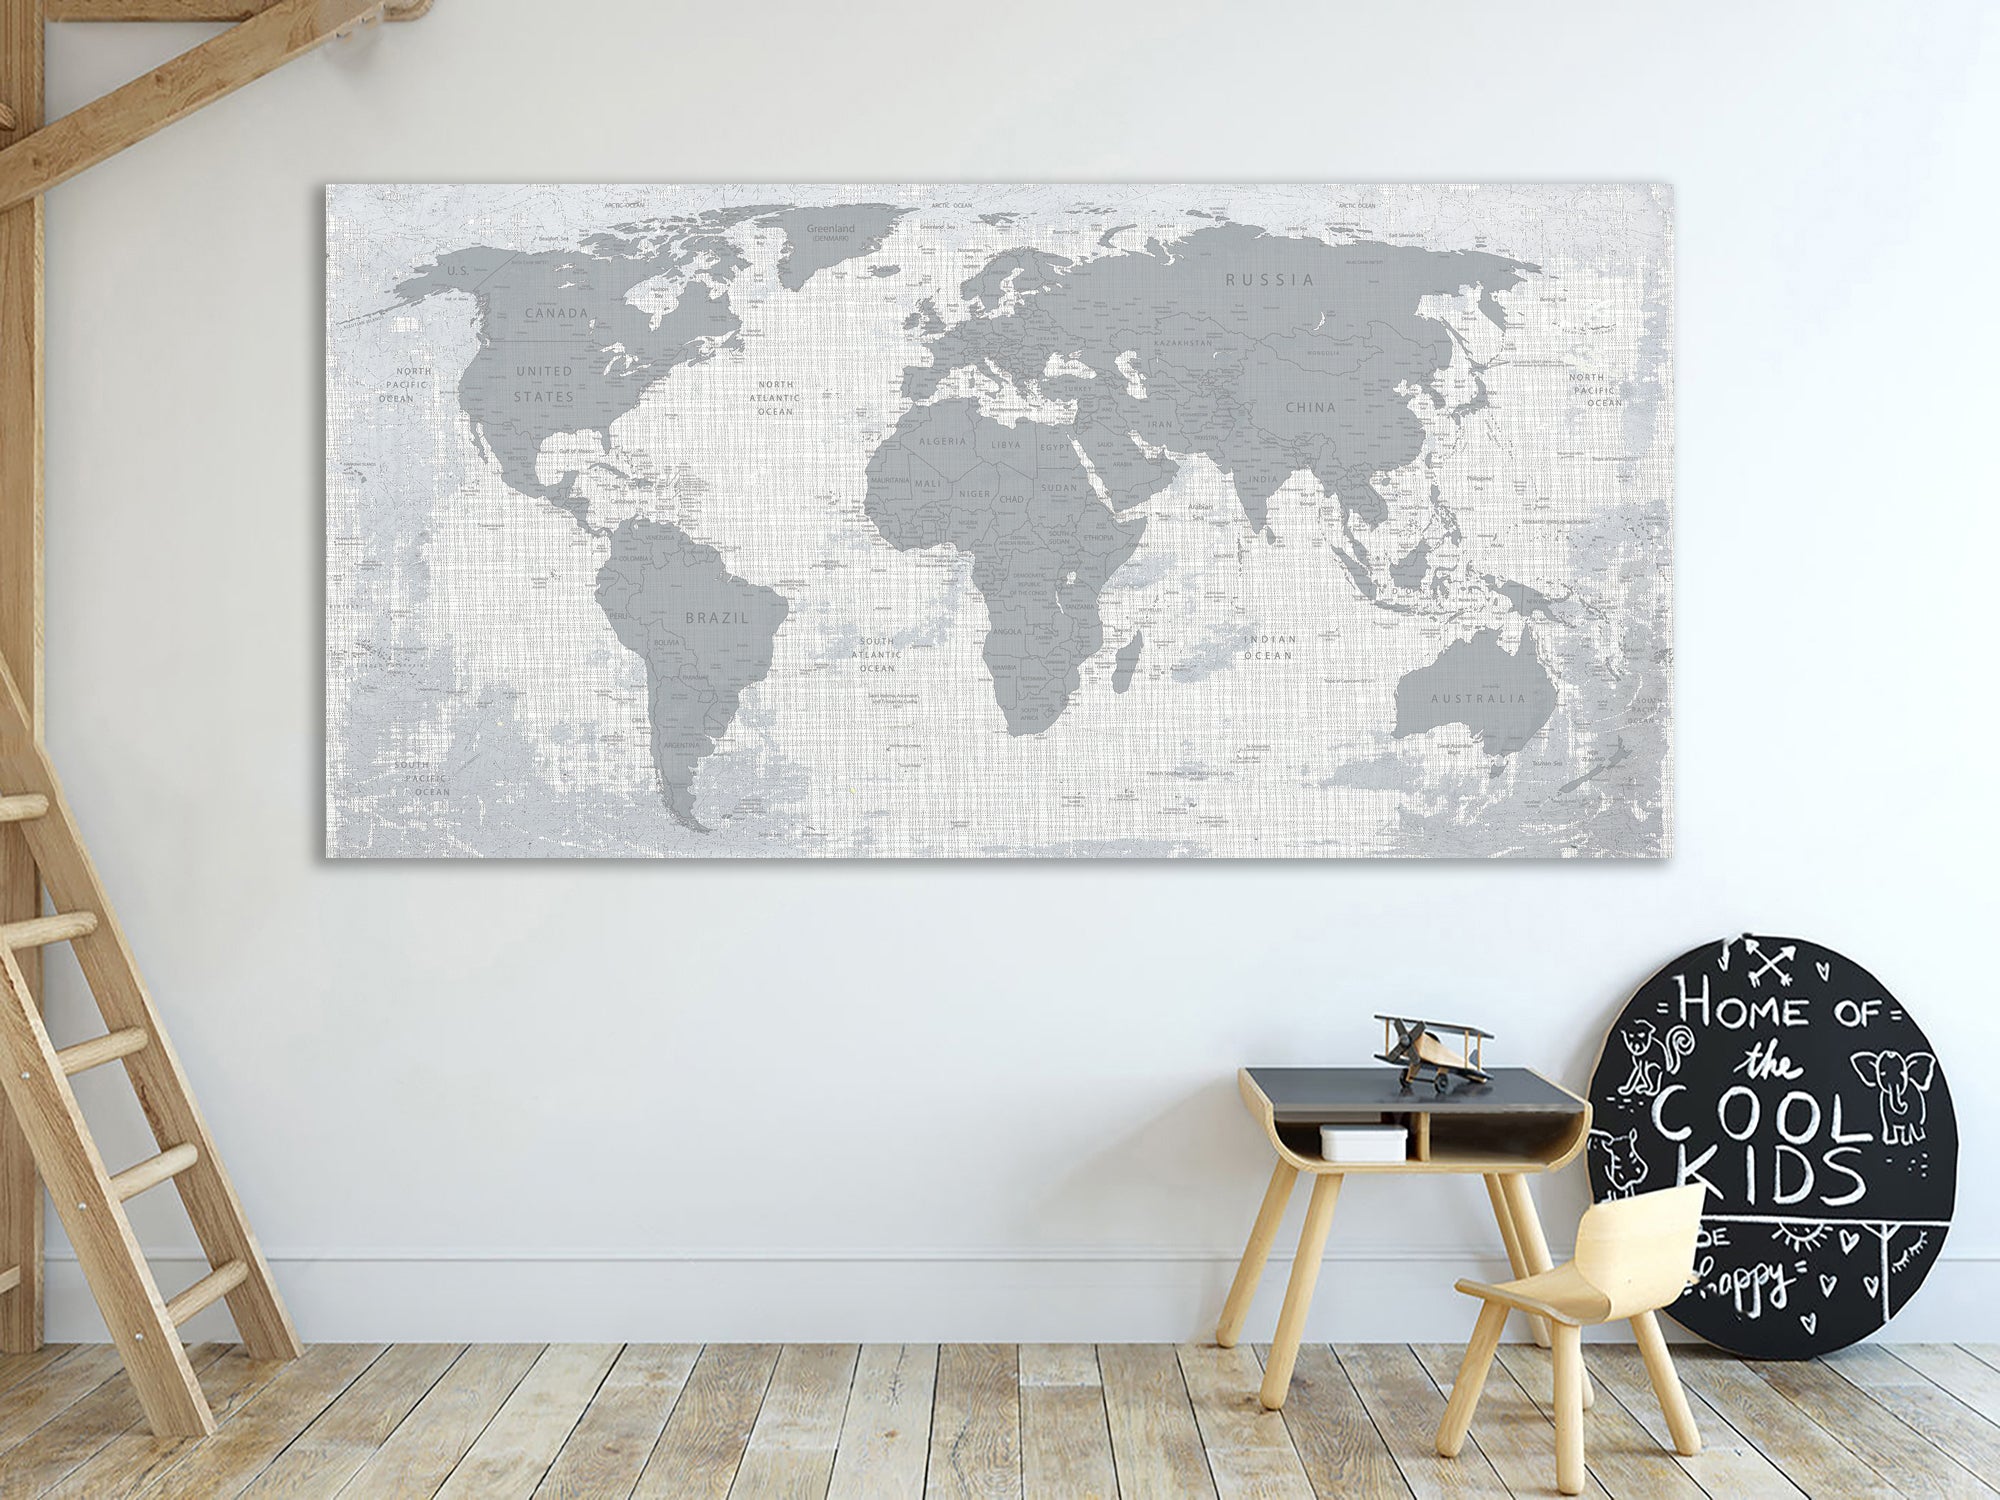 Мапа світу, друк на полотні